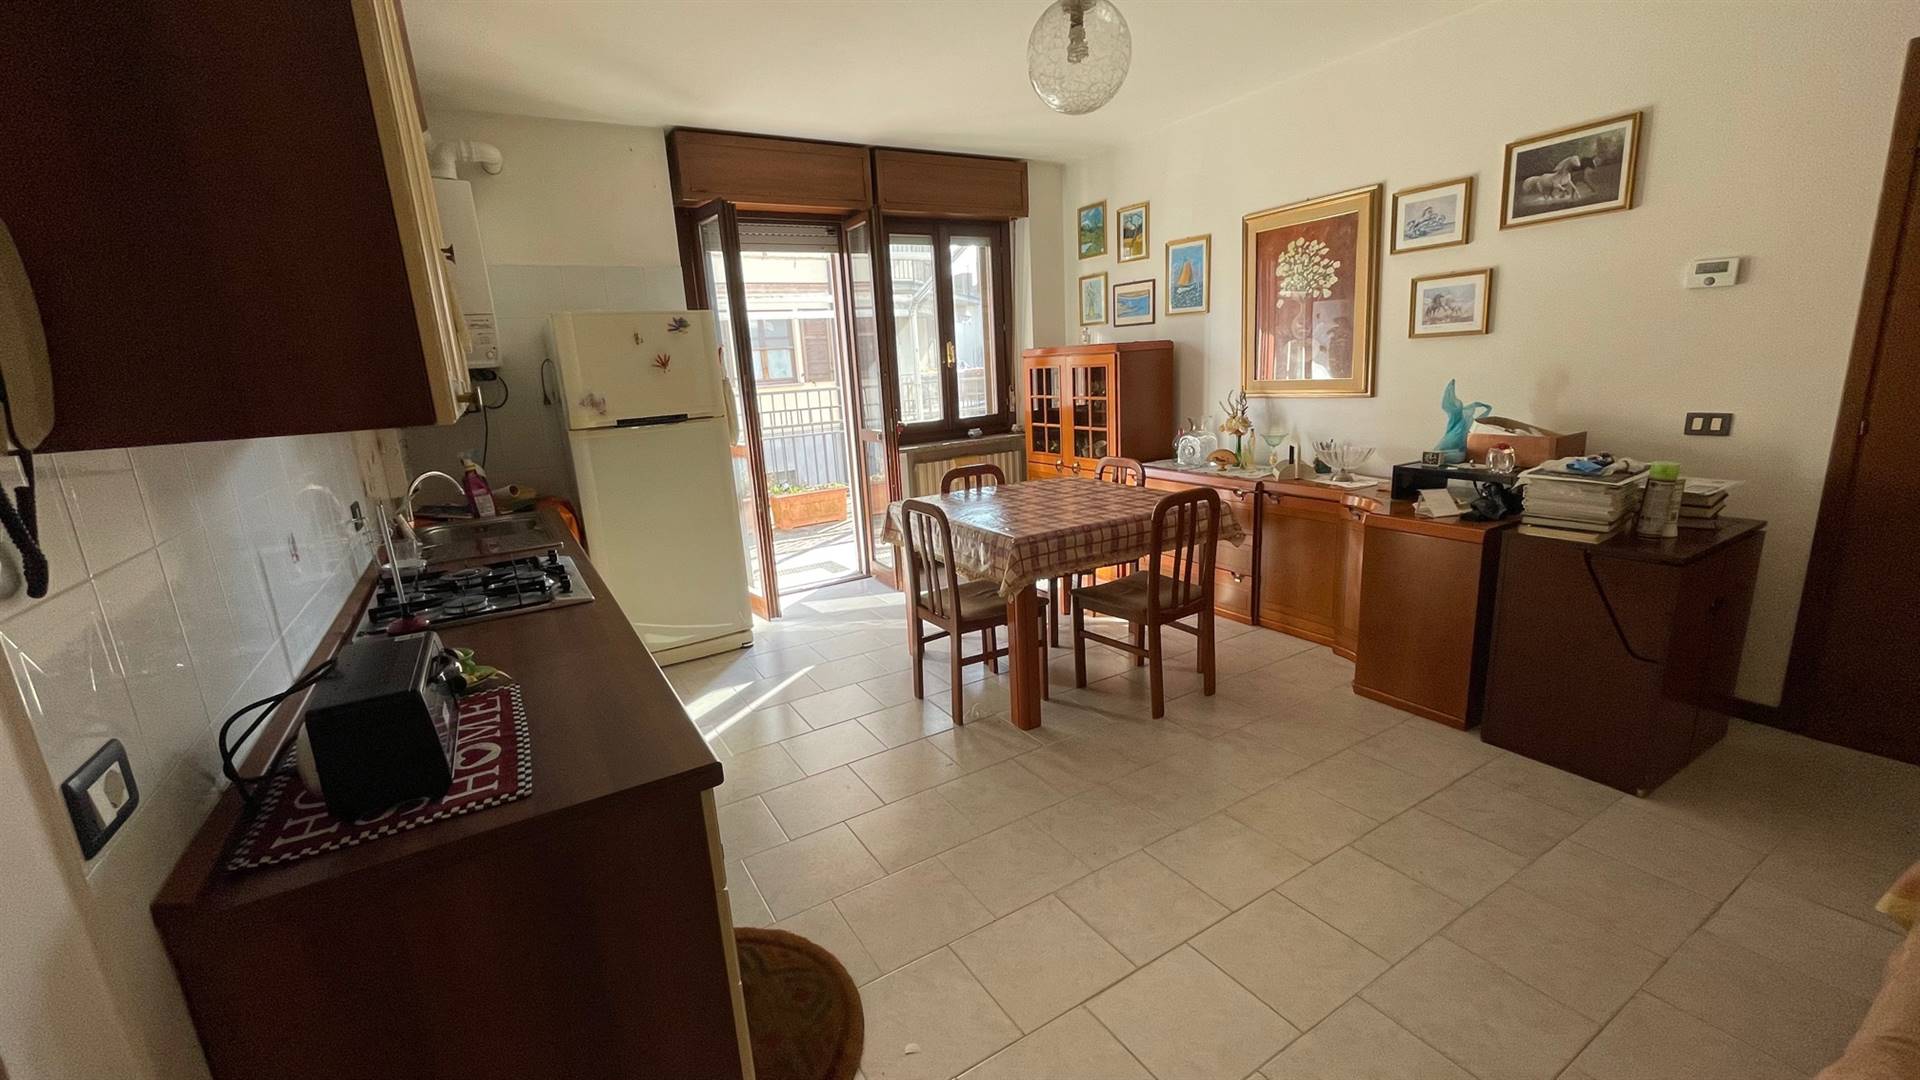 Appartamento in vendita a Rivanazzano, 2 locali, prezzo € 75.000 | CambioCasa.it